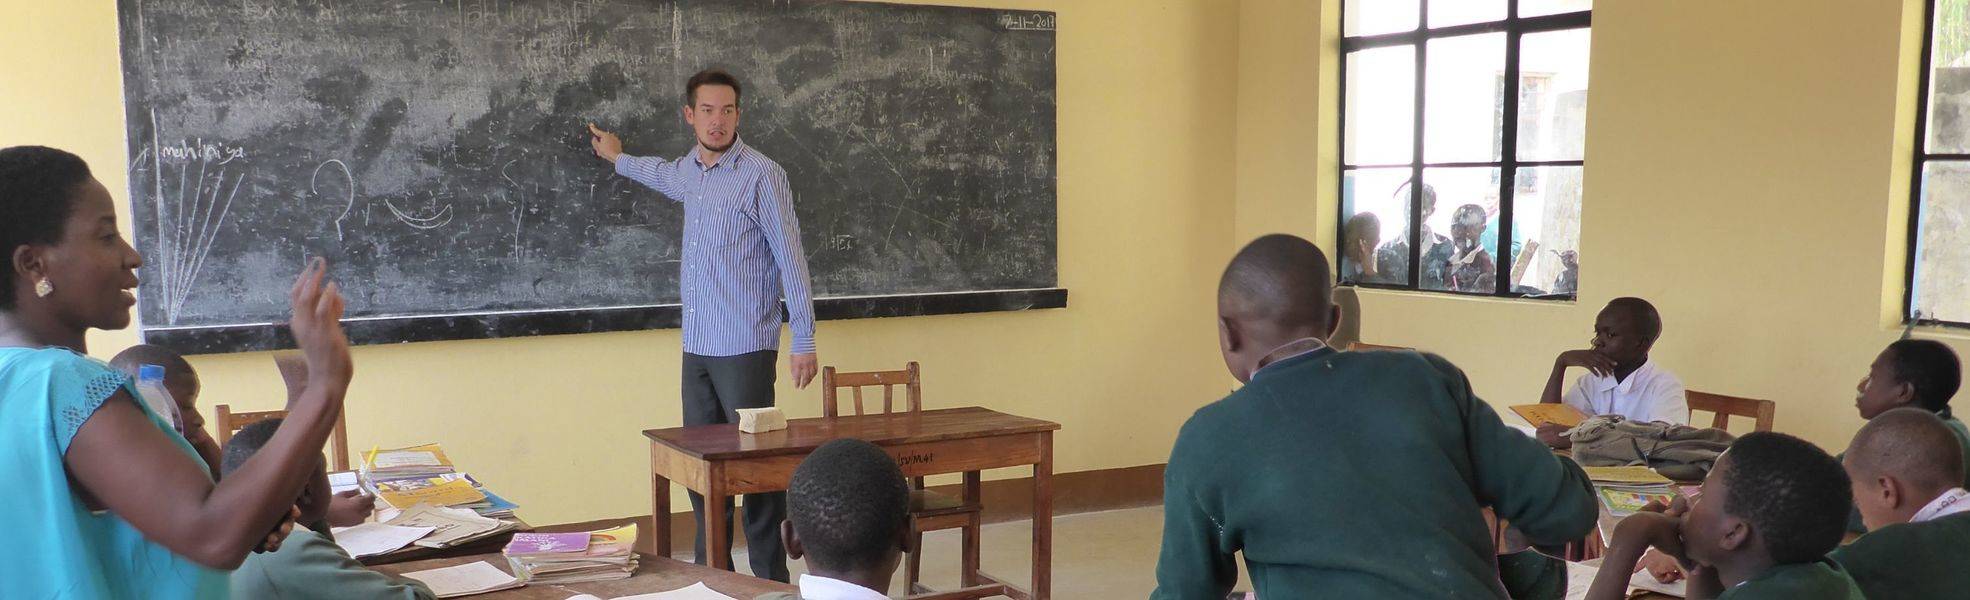 Volunteer beim Auslandspraktikum in Tansania in einer Schule